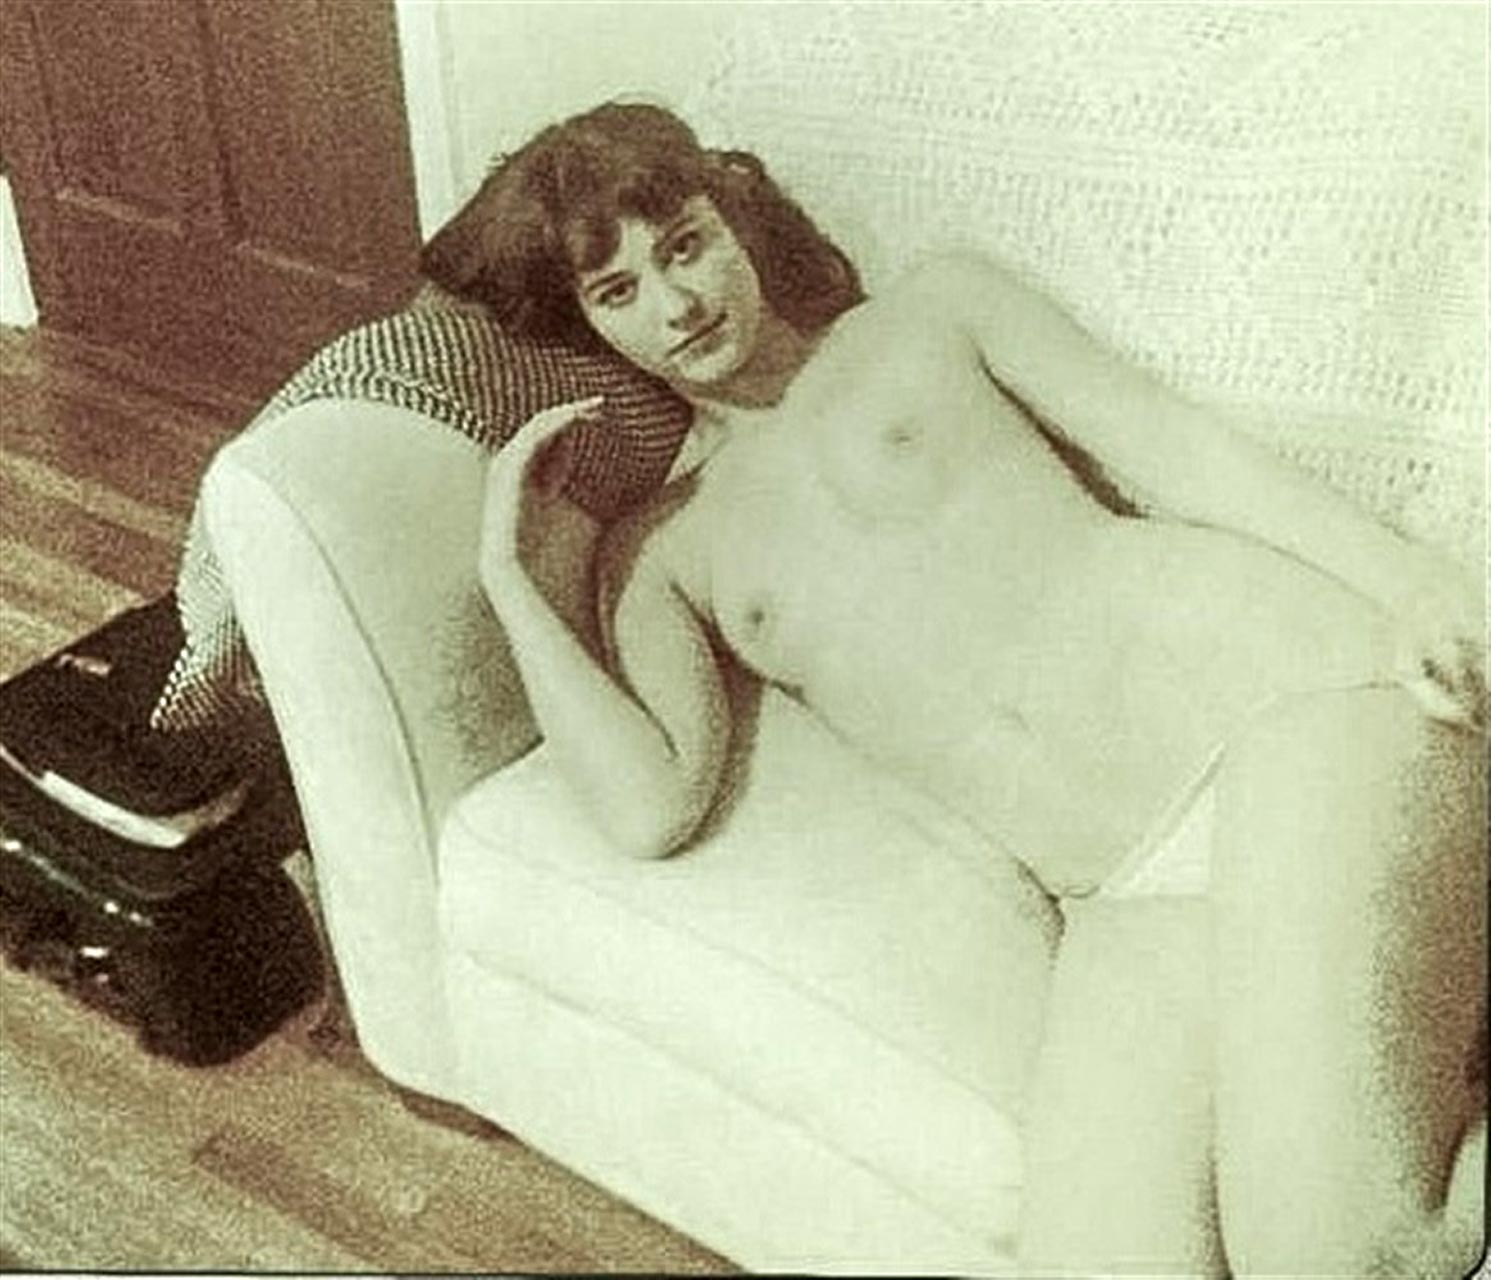 Mary e winstead leaked nudes - 🧡 Mary Elizabeth Winstead Nude Photo C...